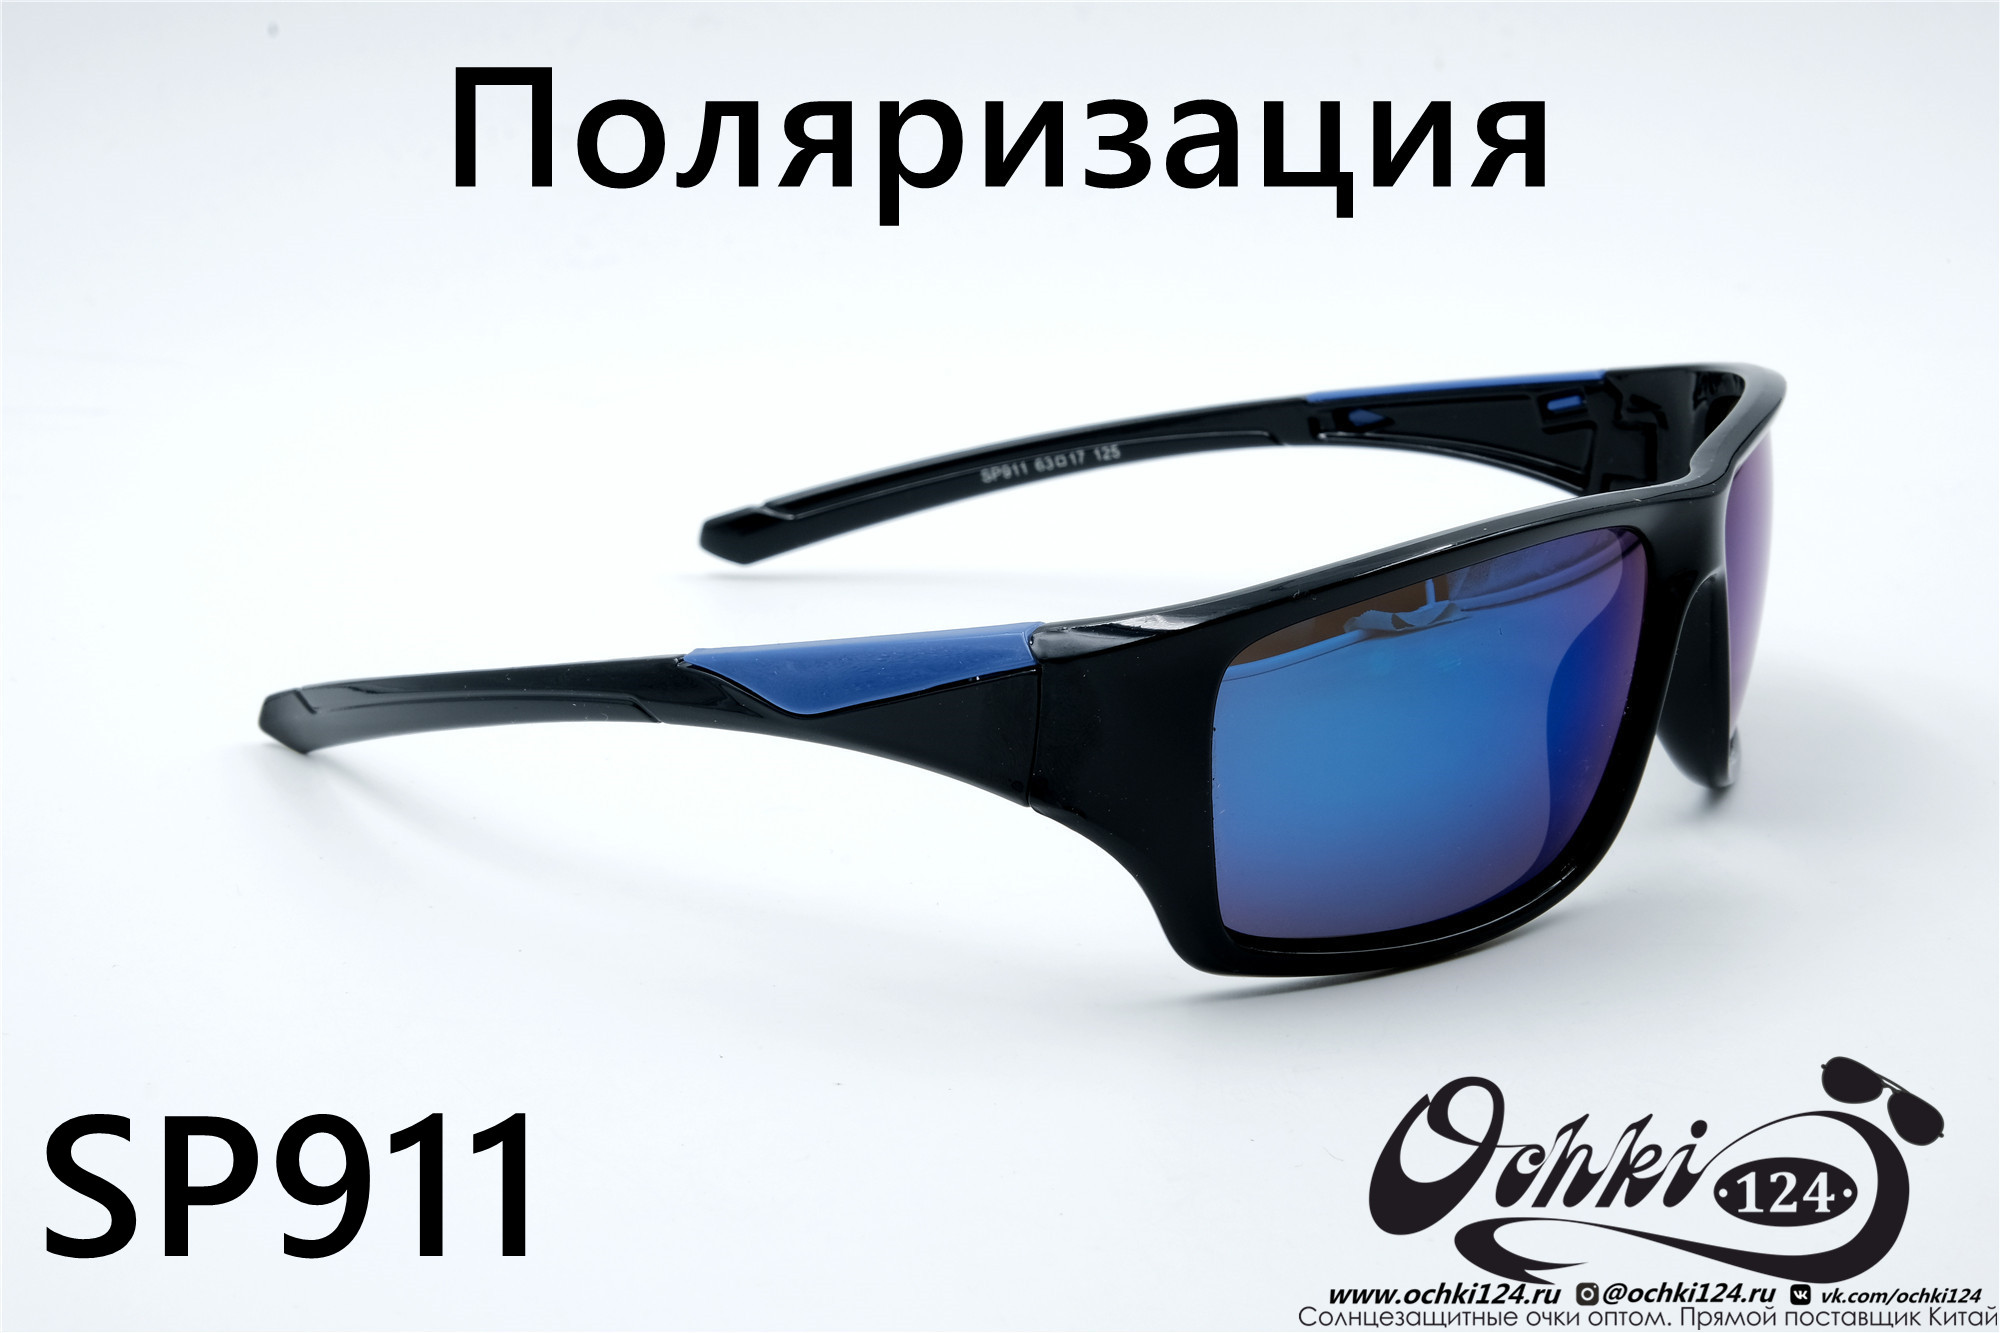  Солнцезащитные очки картинка 2022 Мужские Поляризованные Спорт Materice SP911-8 